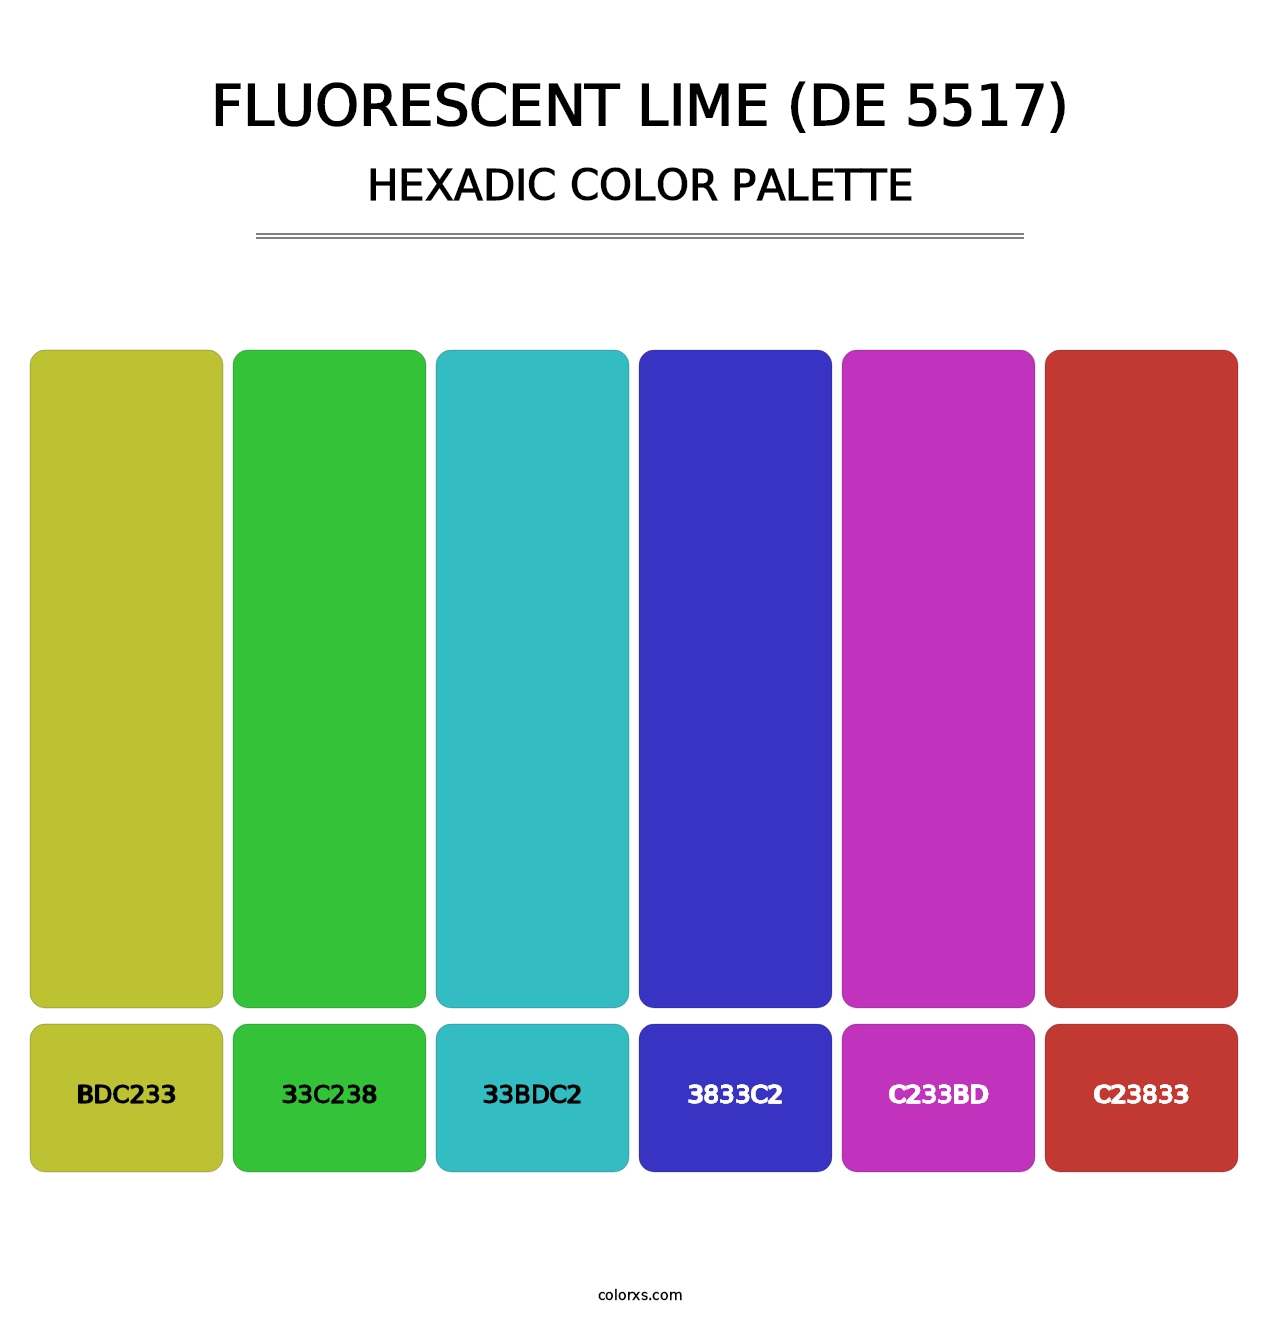 Fluorescent Lime (DE 5517) - Hexadic Color Palette